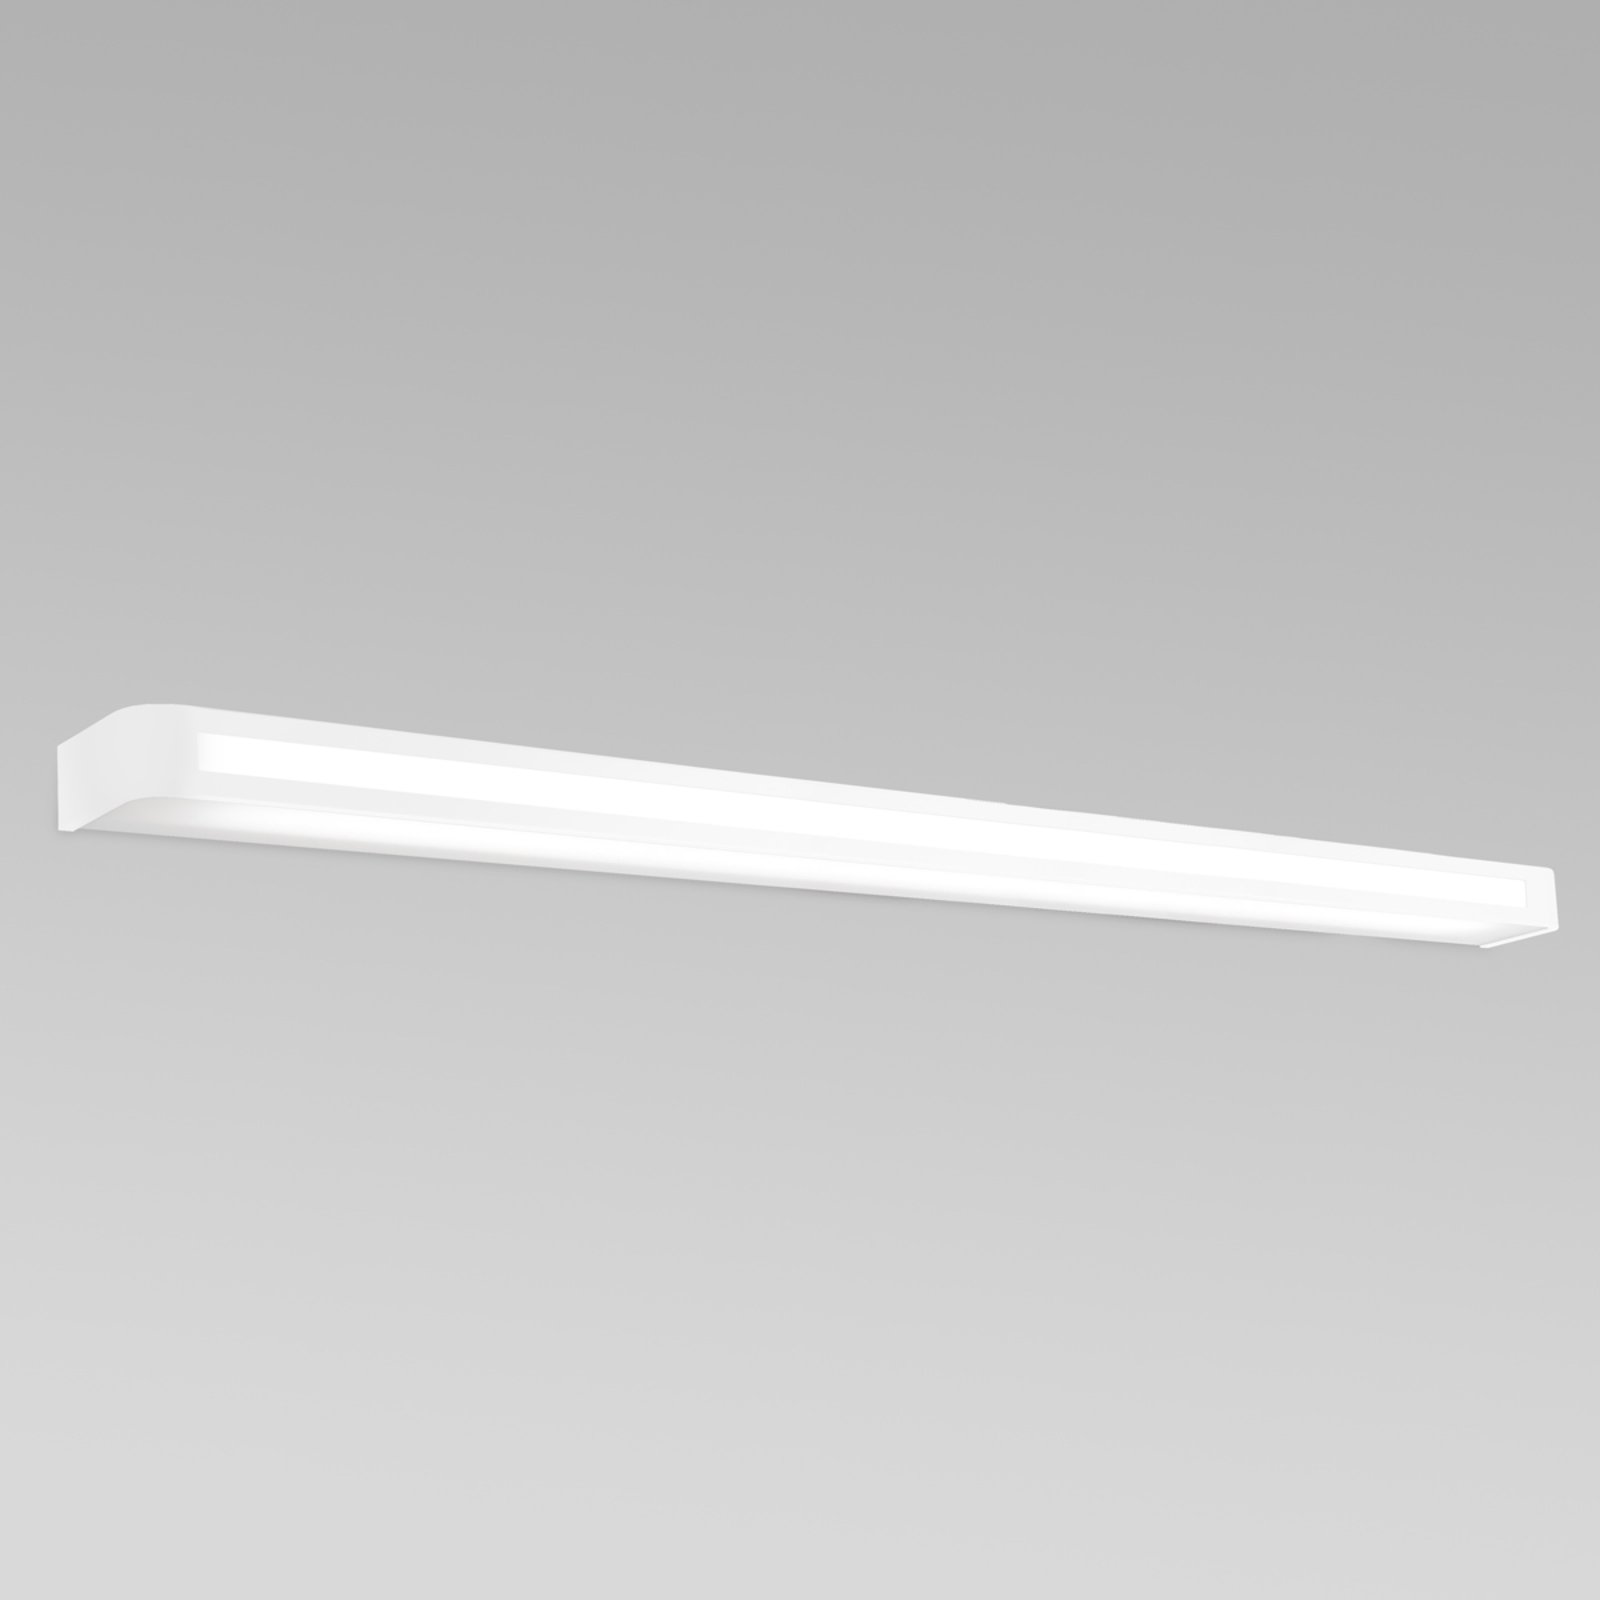 Tijdloze LED wandlamp Arcos, IP20 120 cm, wit